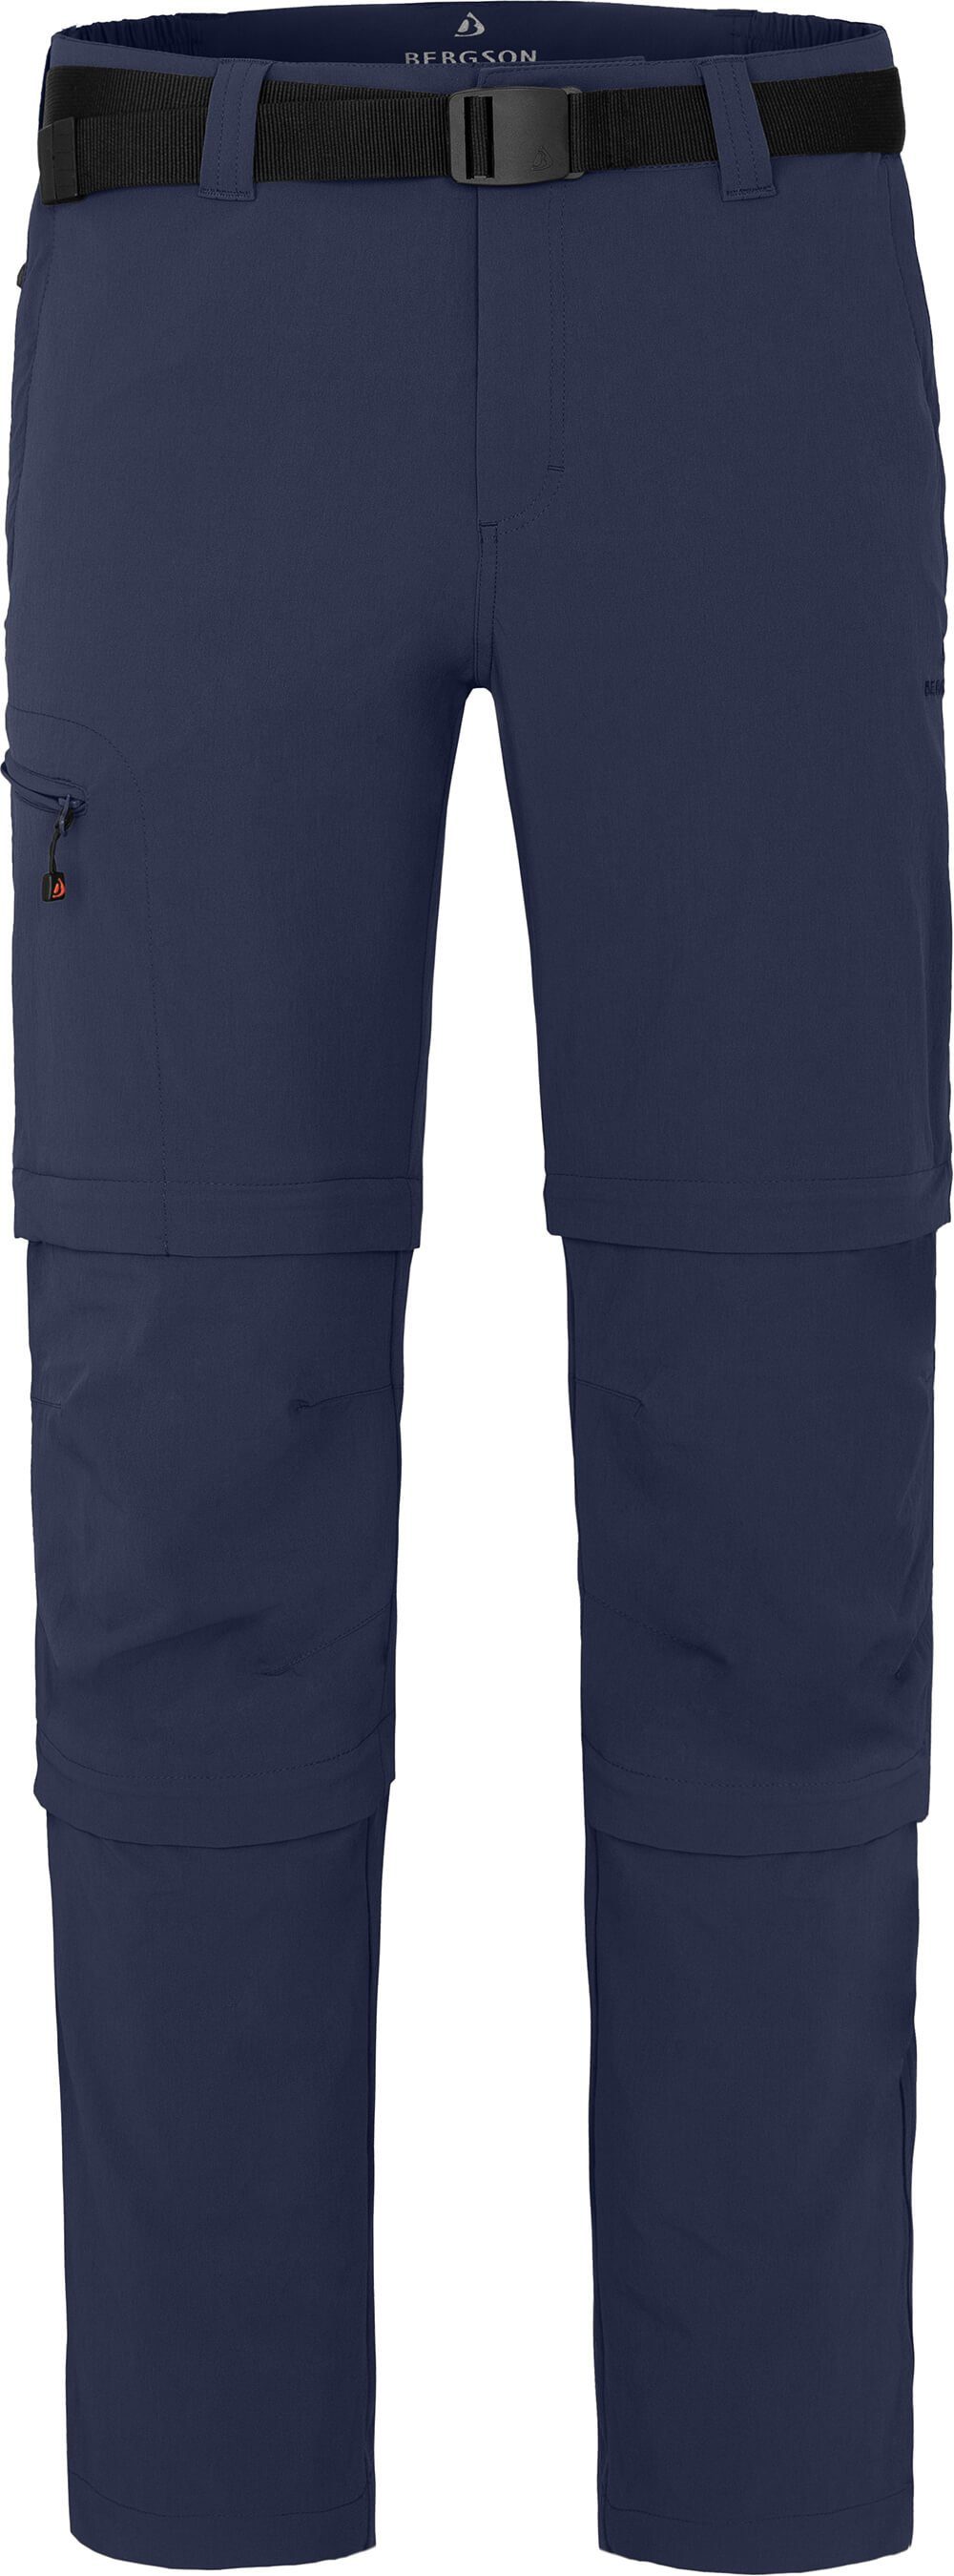 Bergson Zip-off-Hose OSSA Doppel Zipp-Off Herren Wanderhose, vielseitig, pflegeleicht, Langgrößen, peacoat blau